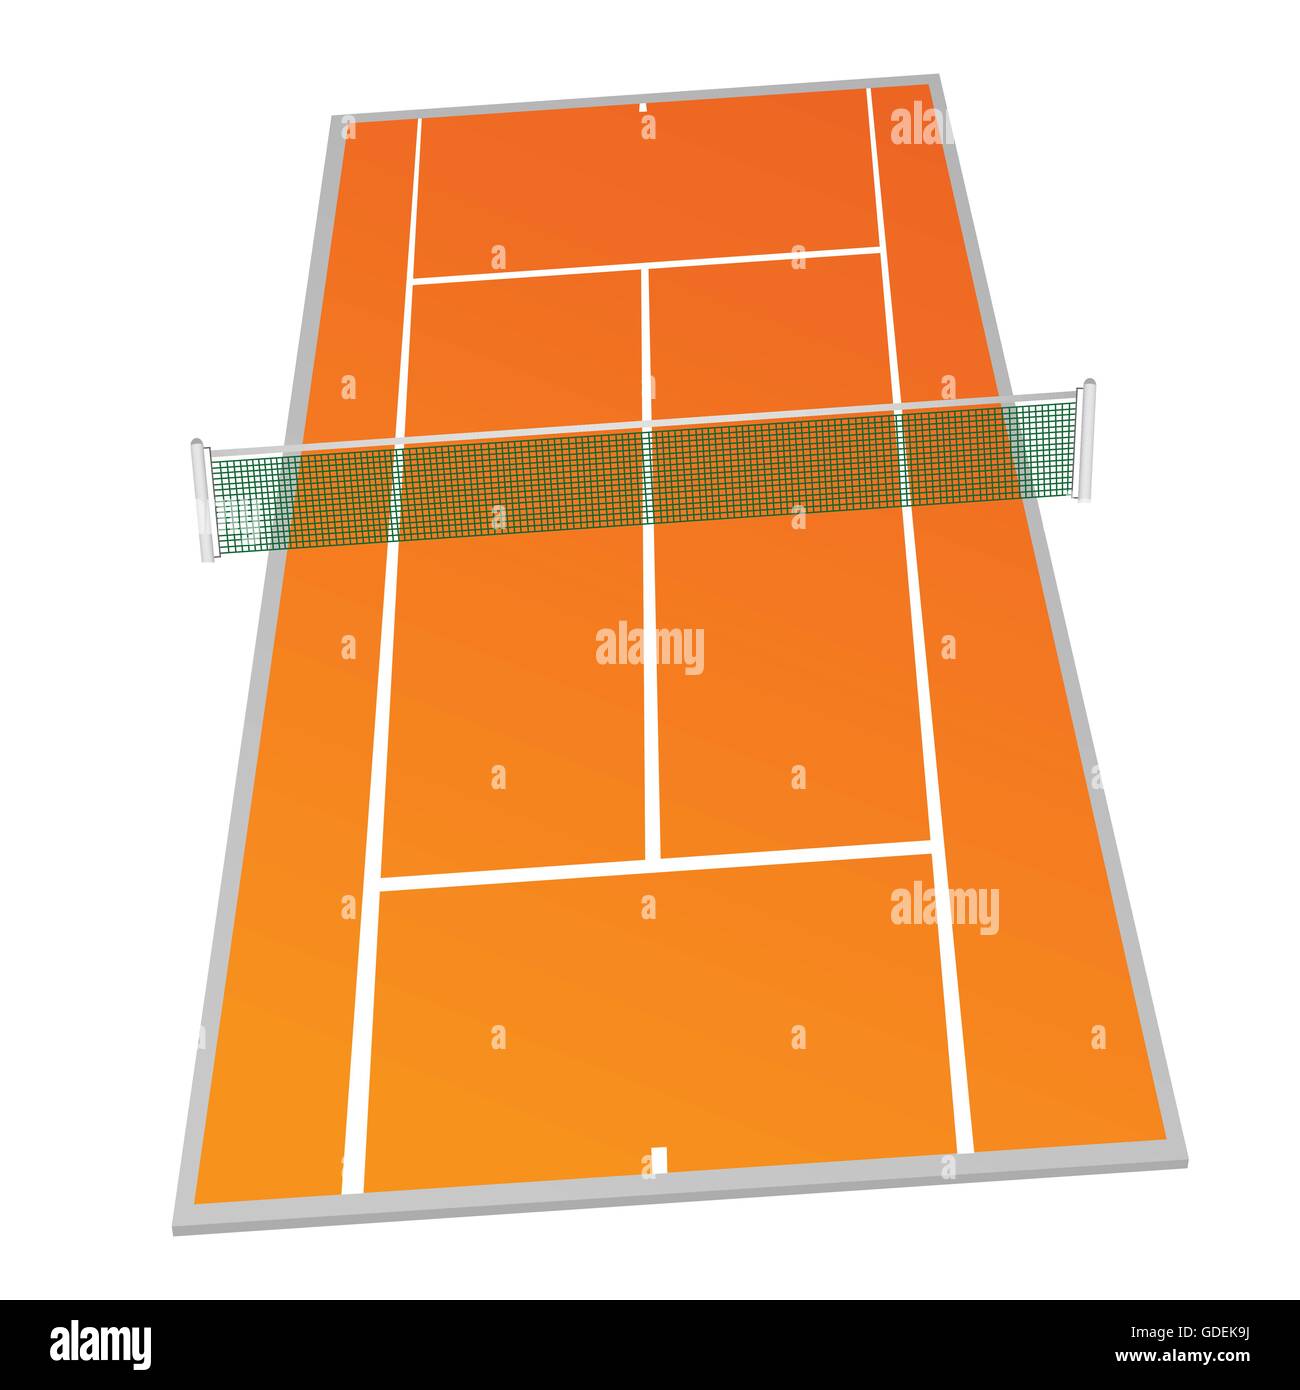 Tennis Court orange Farbe Vektor-Illustration auf weißem Hintergrund  Stock-Vektorgrafik - Alamy